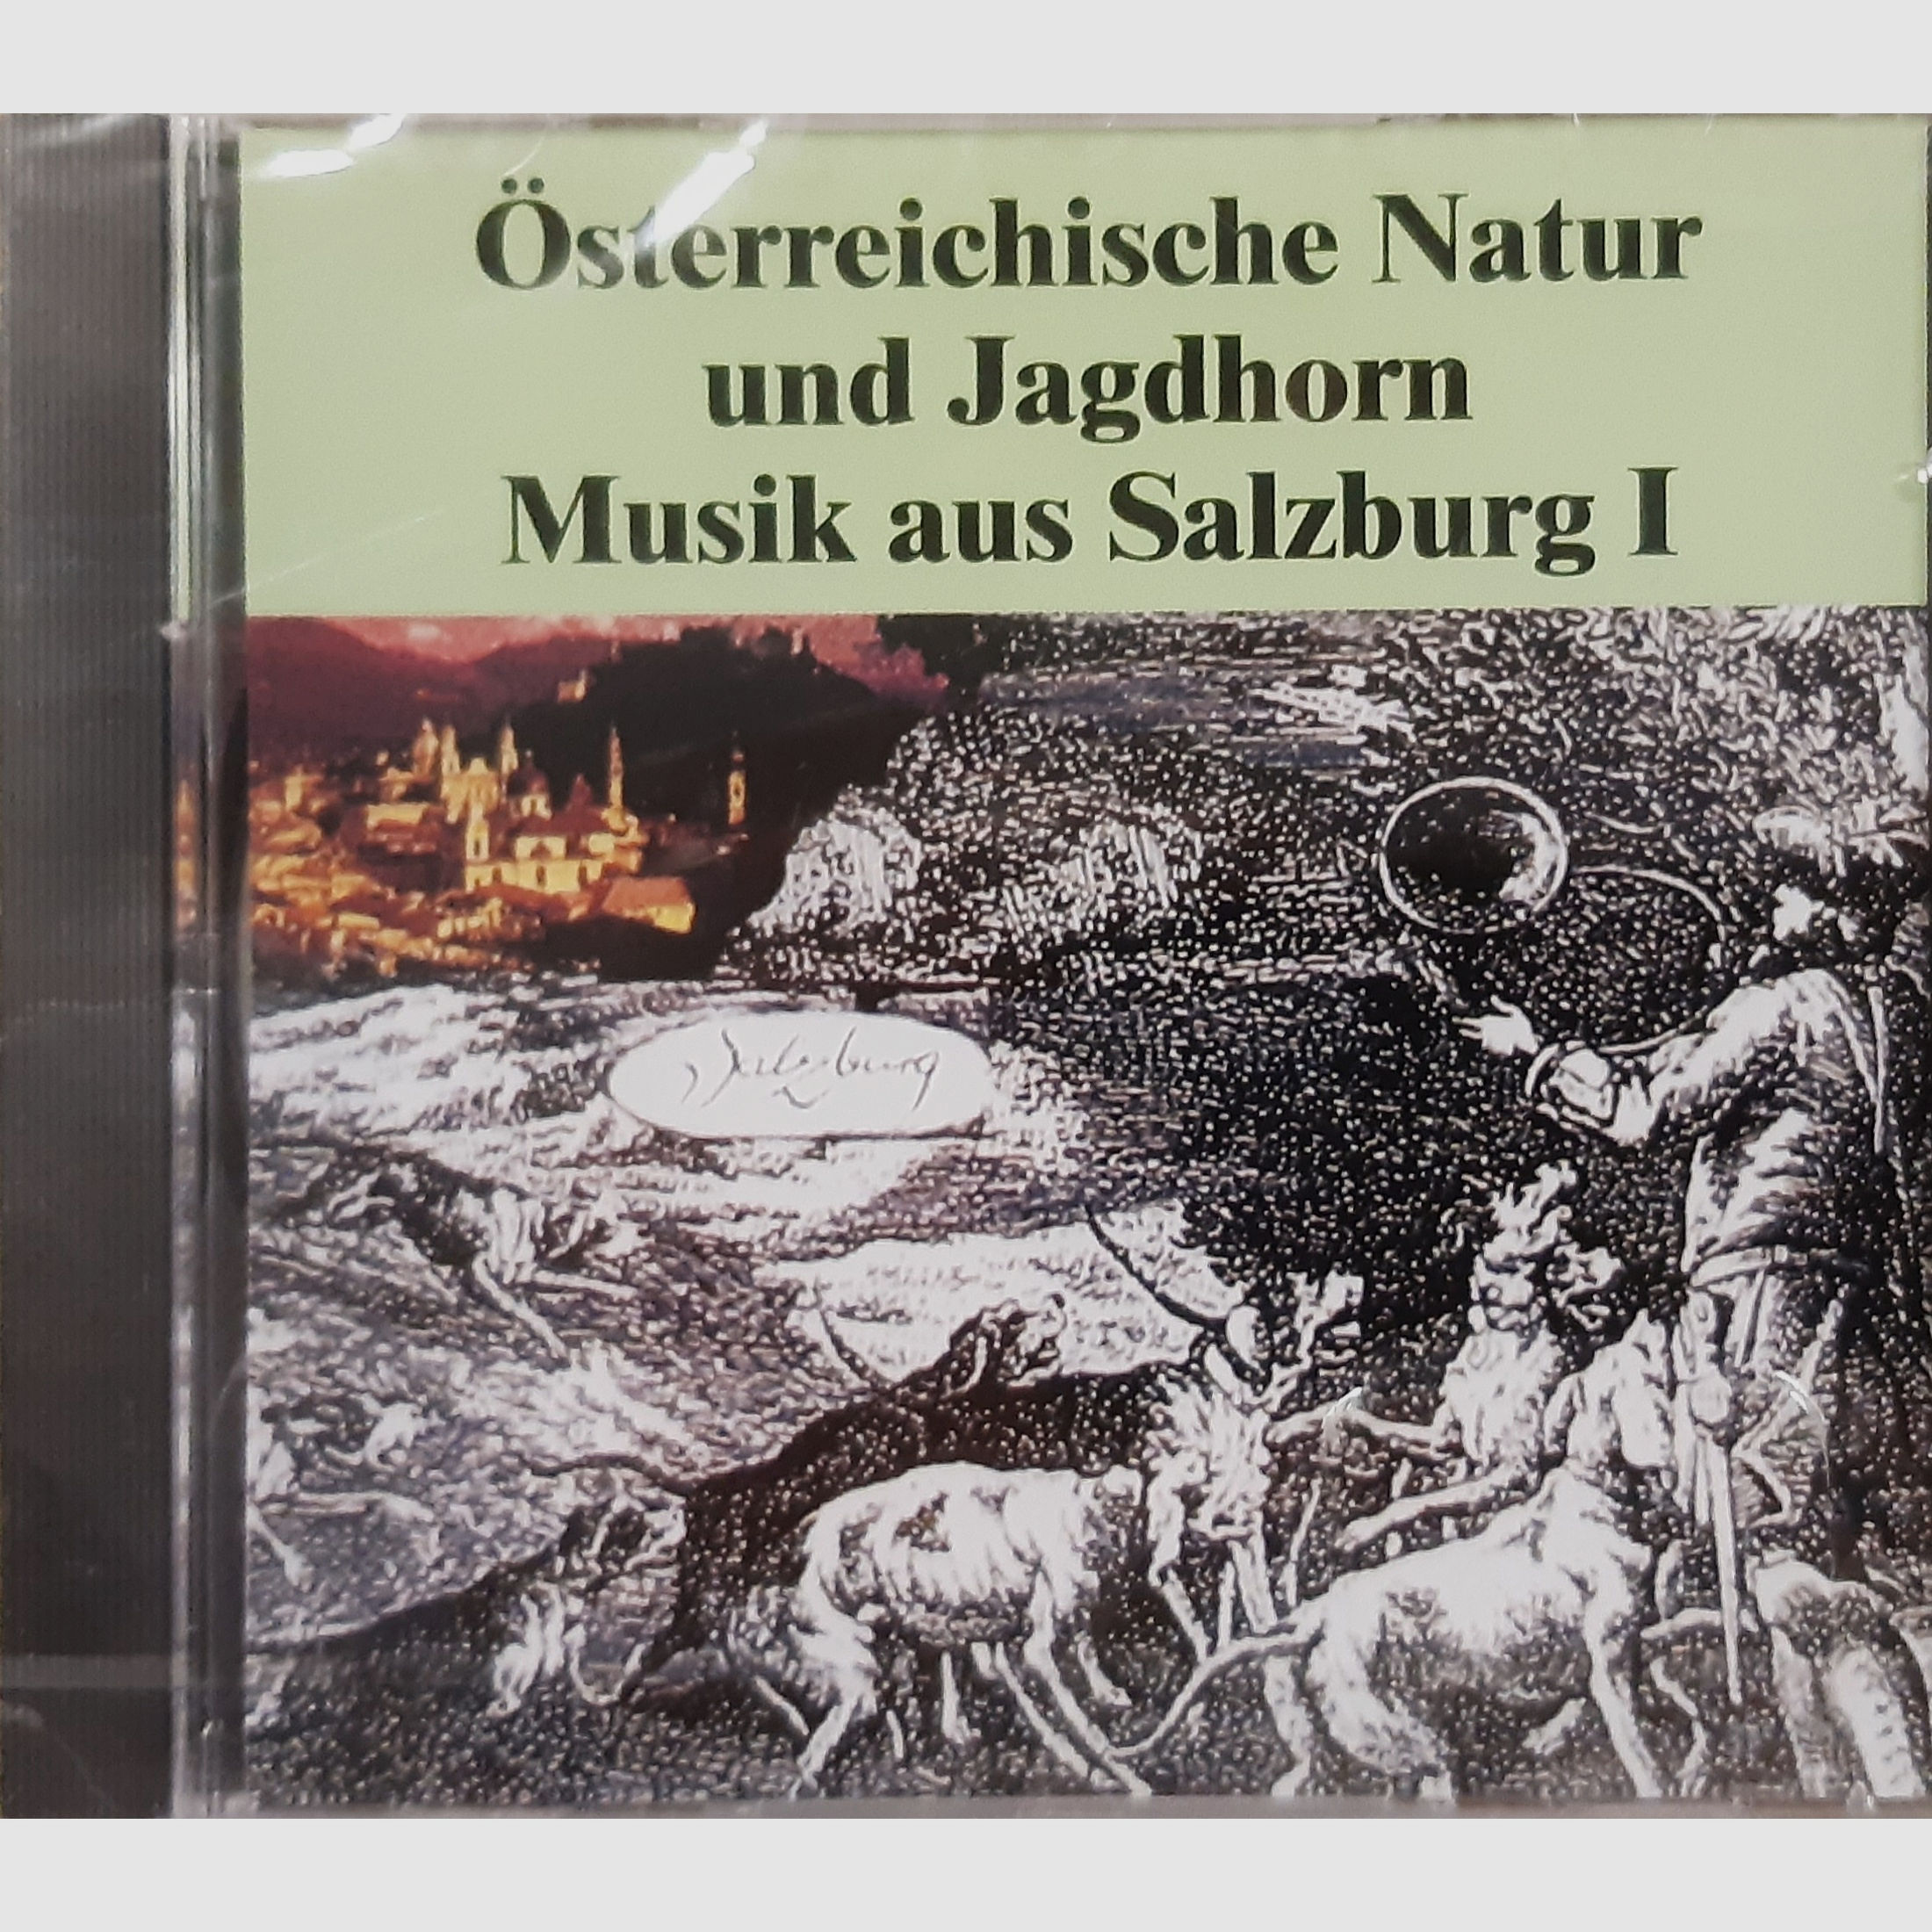 Pfeifenberg,Österreichische Jagdmusik aus Salzburg